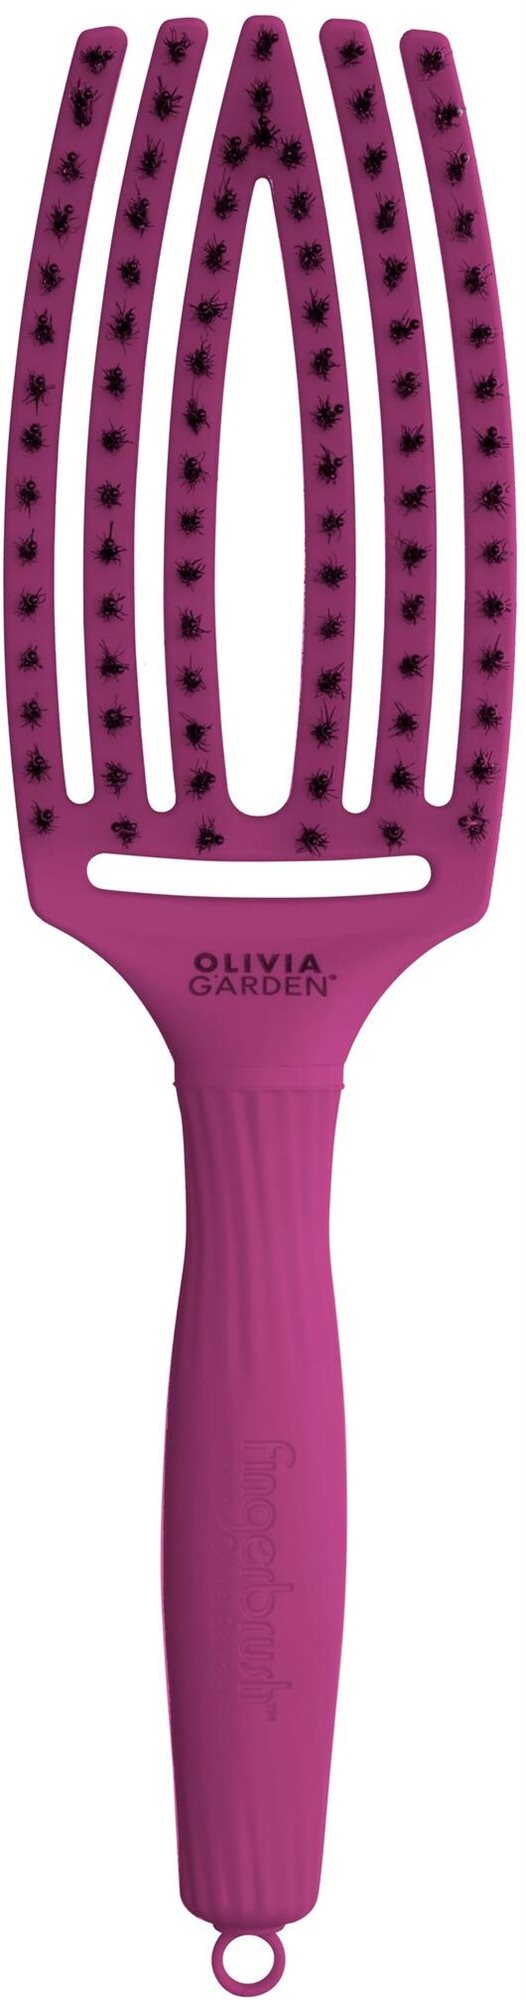 OLIVIA GARDEN Fingerbrush Bright Pink Medium